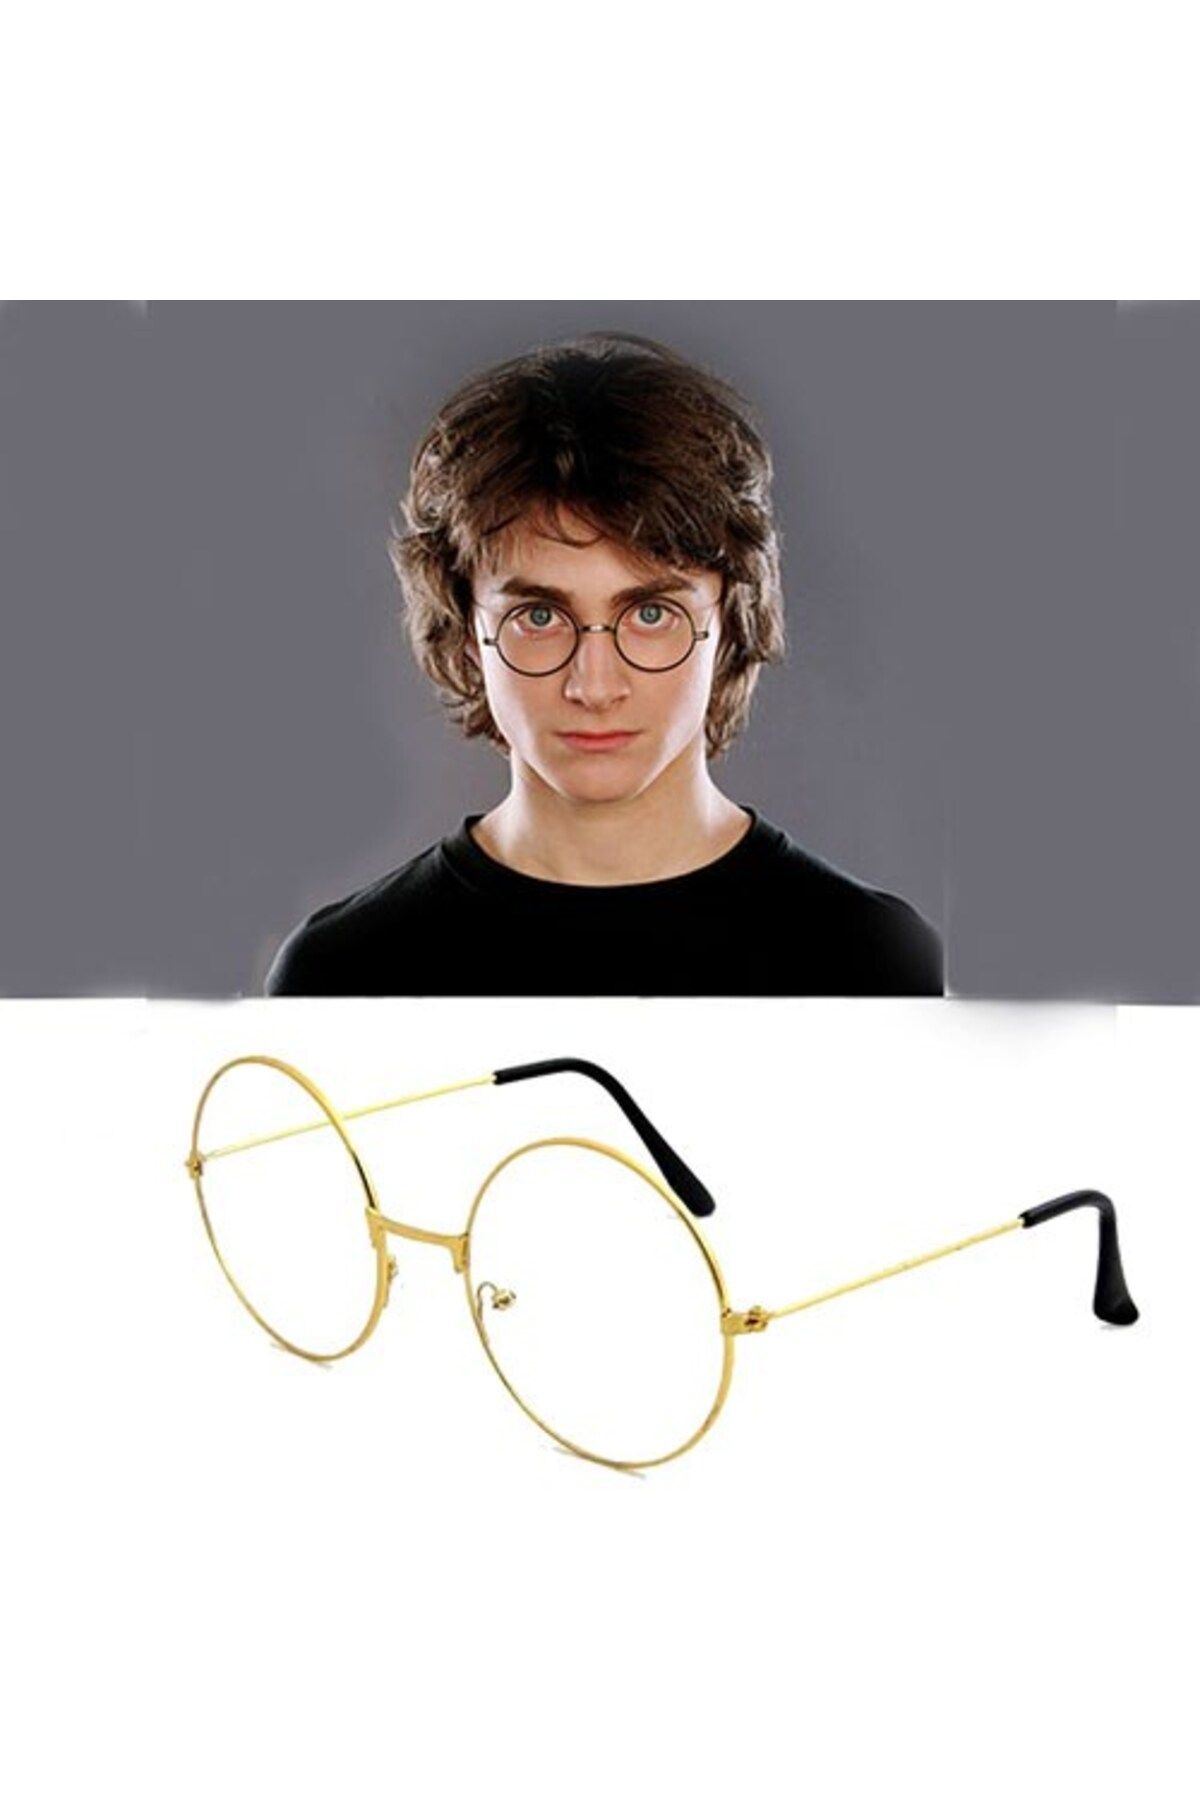 TEKNO İSTANBUL Harry Potter Metal Çerçeveli Gözlüğü - Haryy Potter Gryffindor Gözlüğü